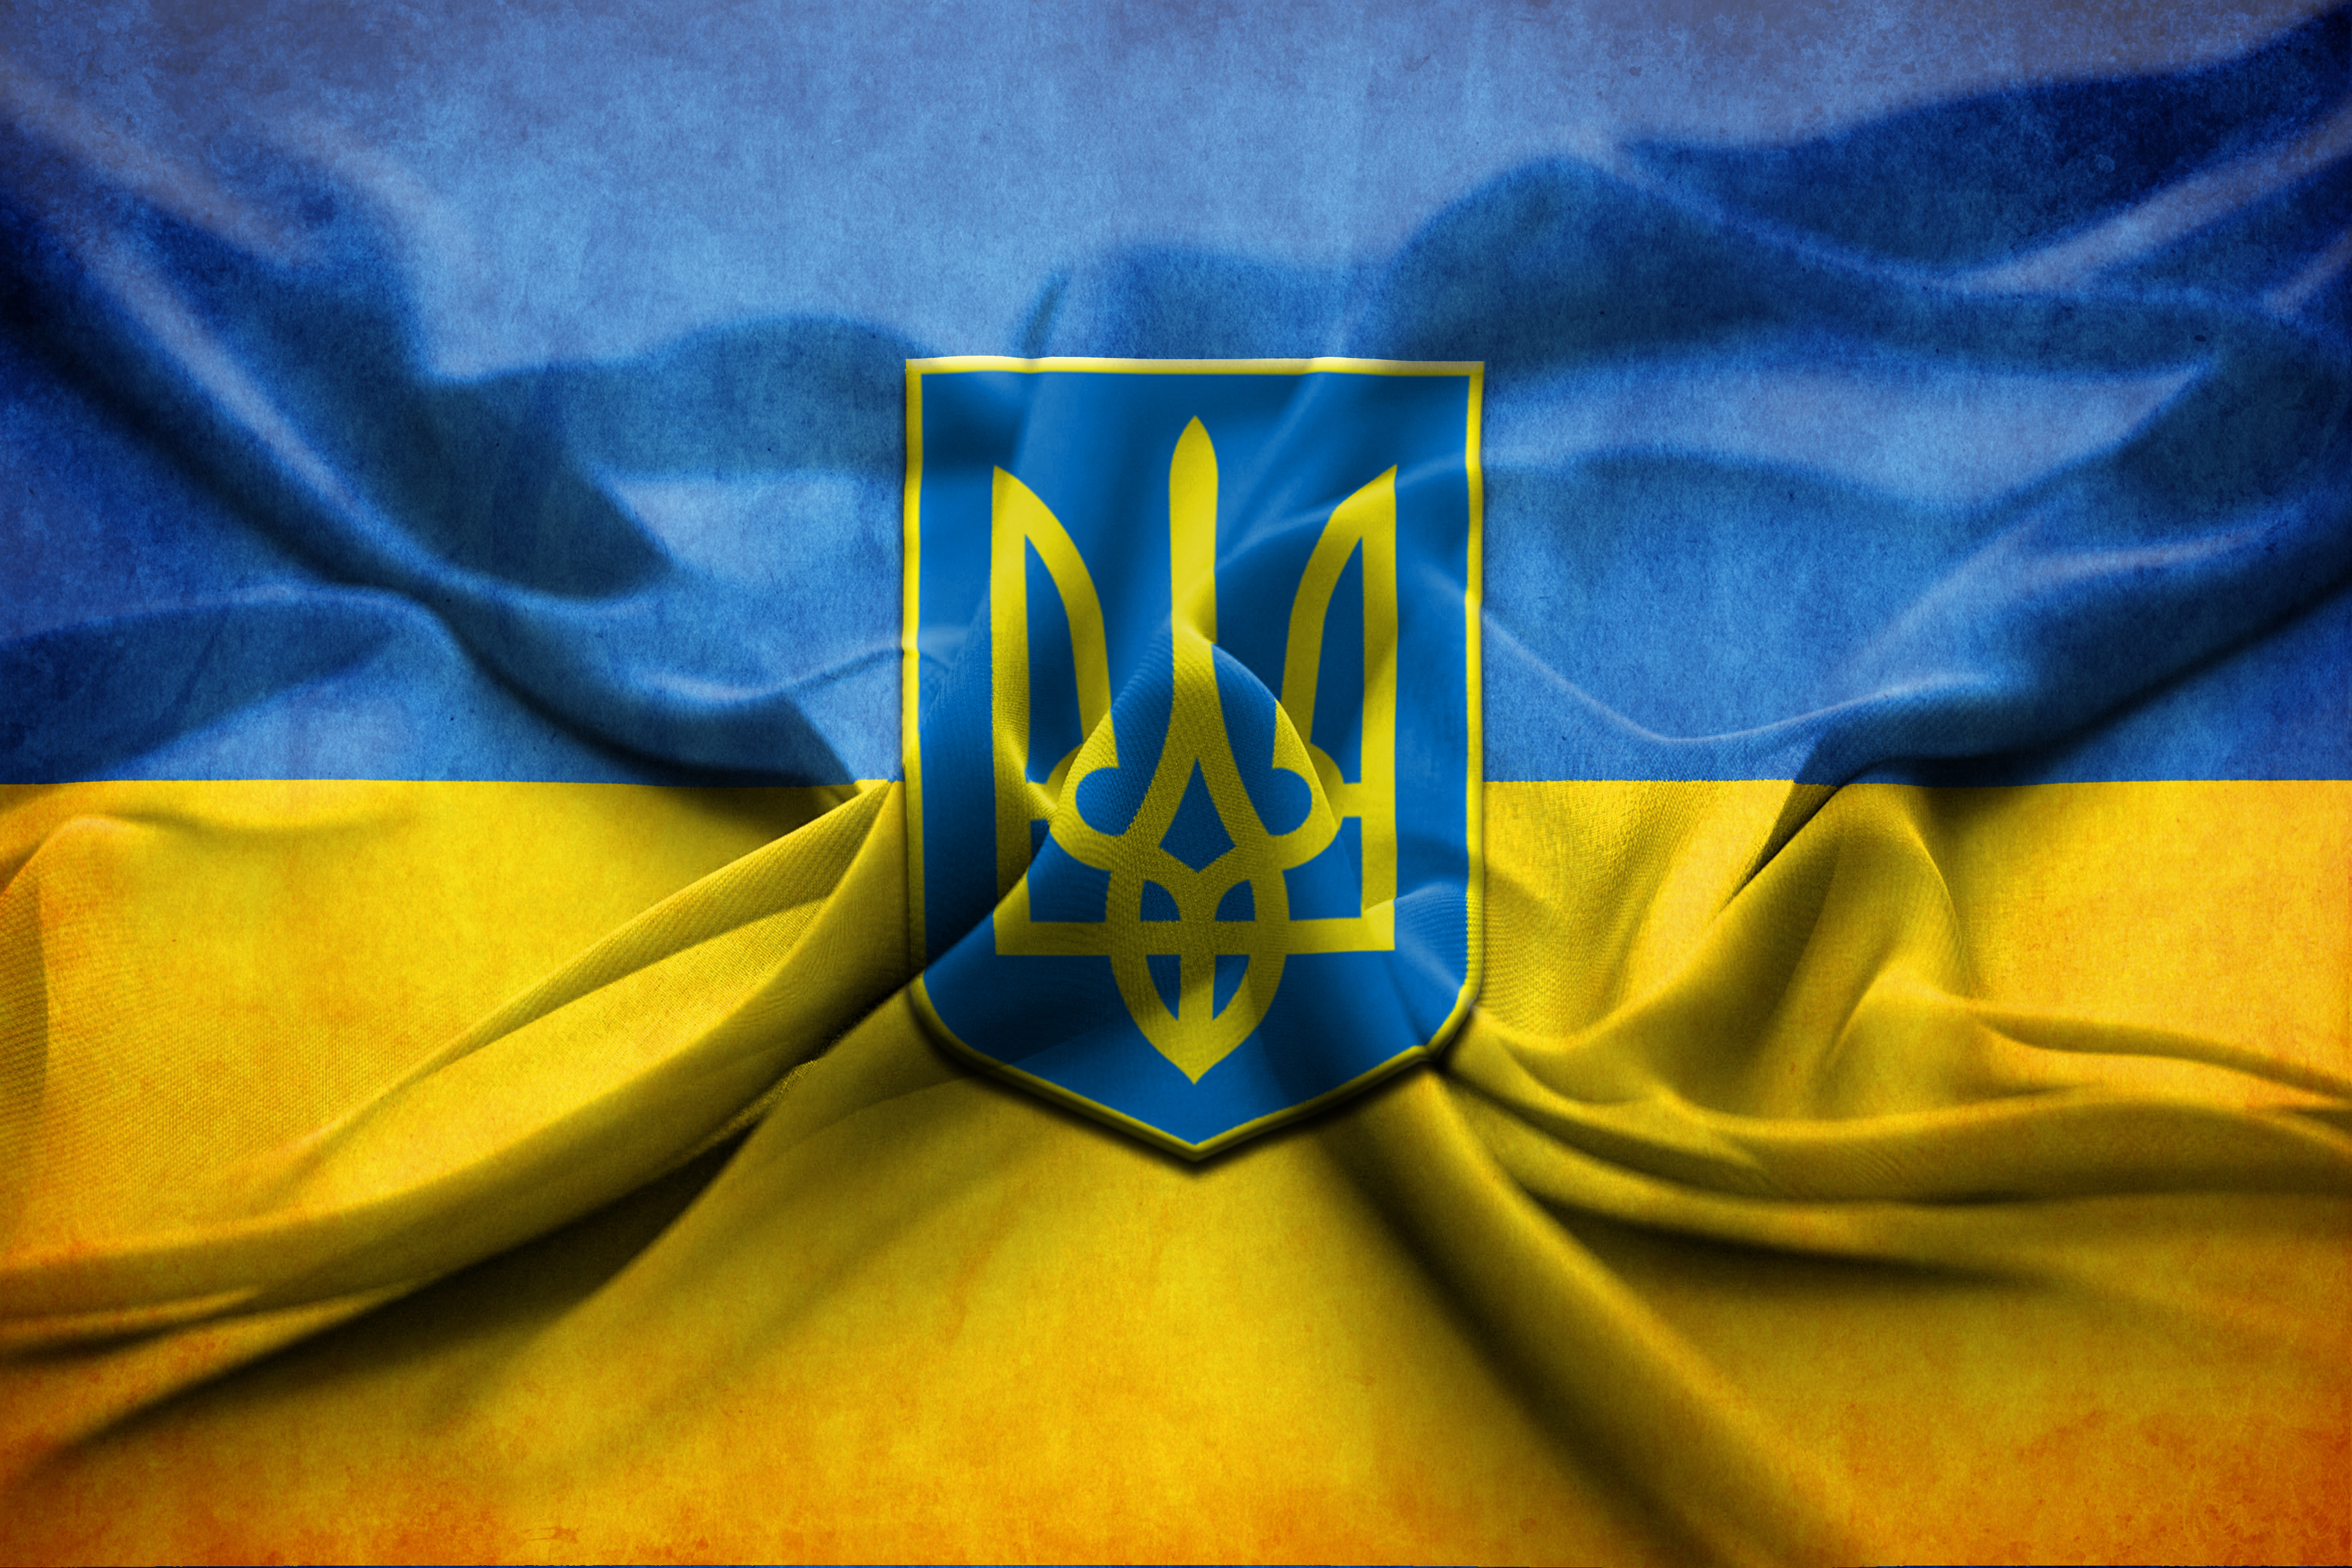 Вітаю вас з Днем державного прапора України! Наш державний прапор оточений багатовіковою славою, він вінчав великі перемоги, найважливіші події в житті країни.
